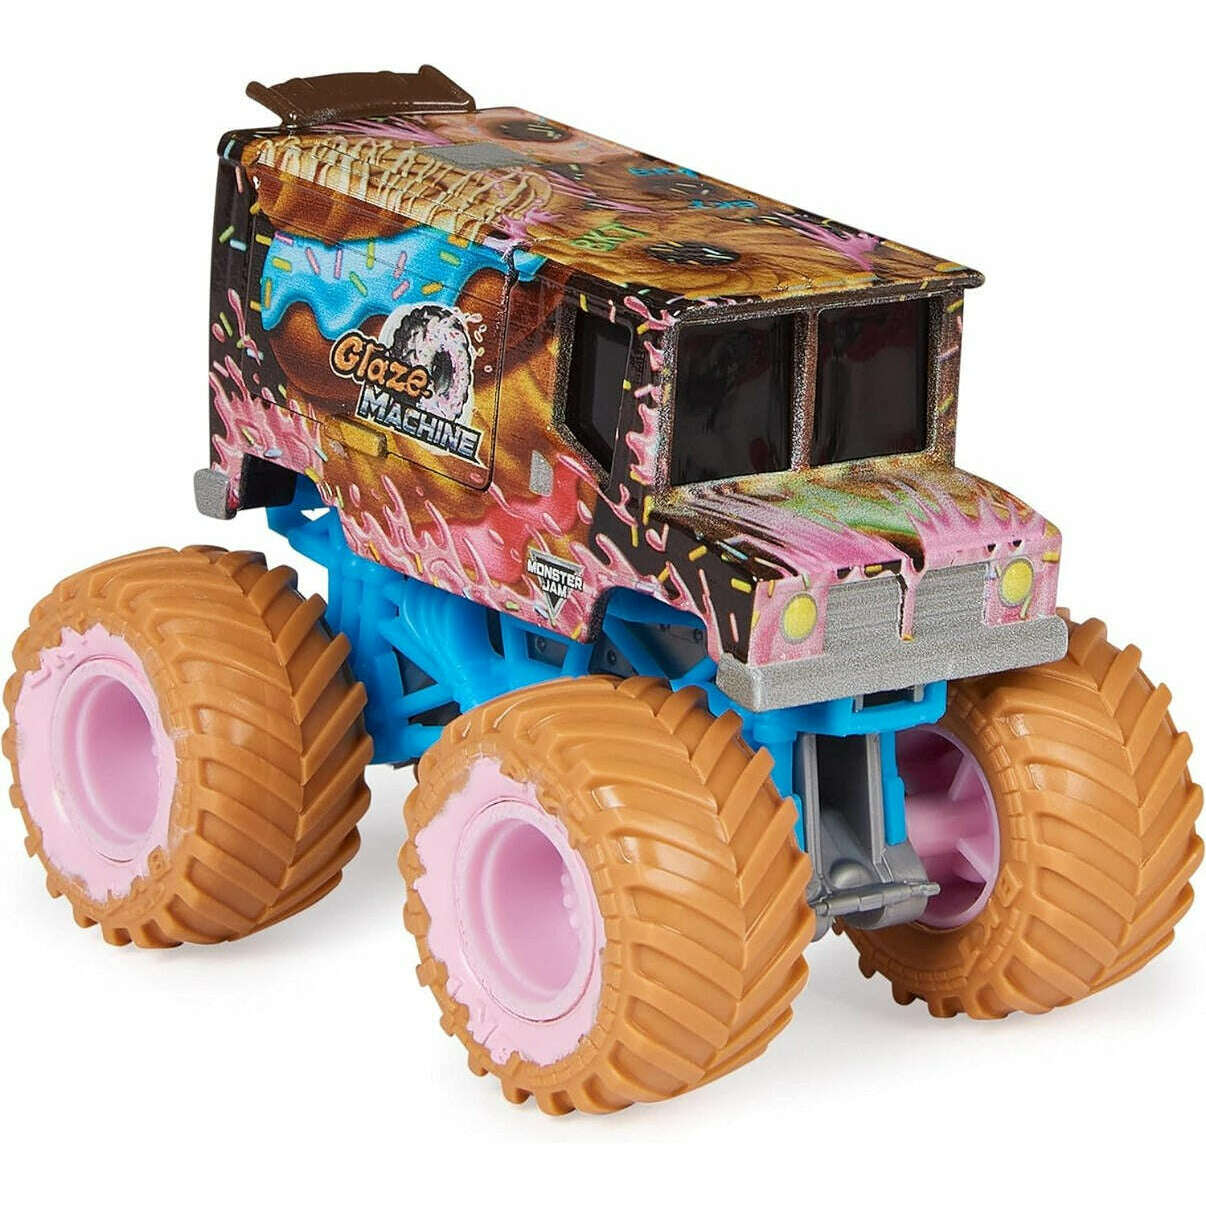 Toys N Tuck:Monster Jam 1:64 Series 29 Glaze Machine,Monster Jam